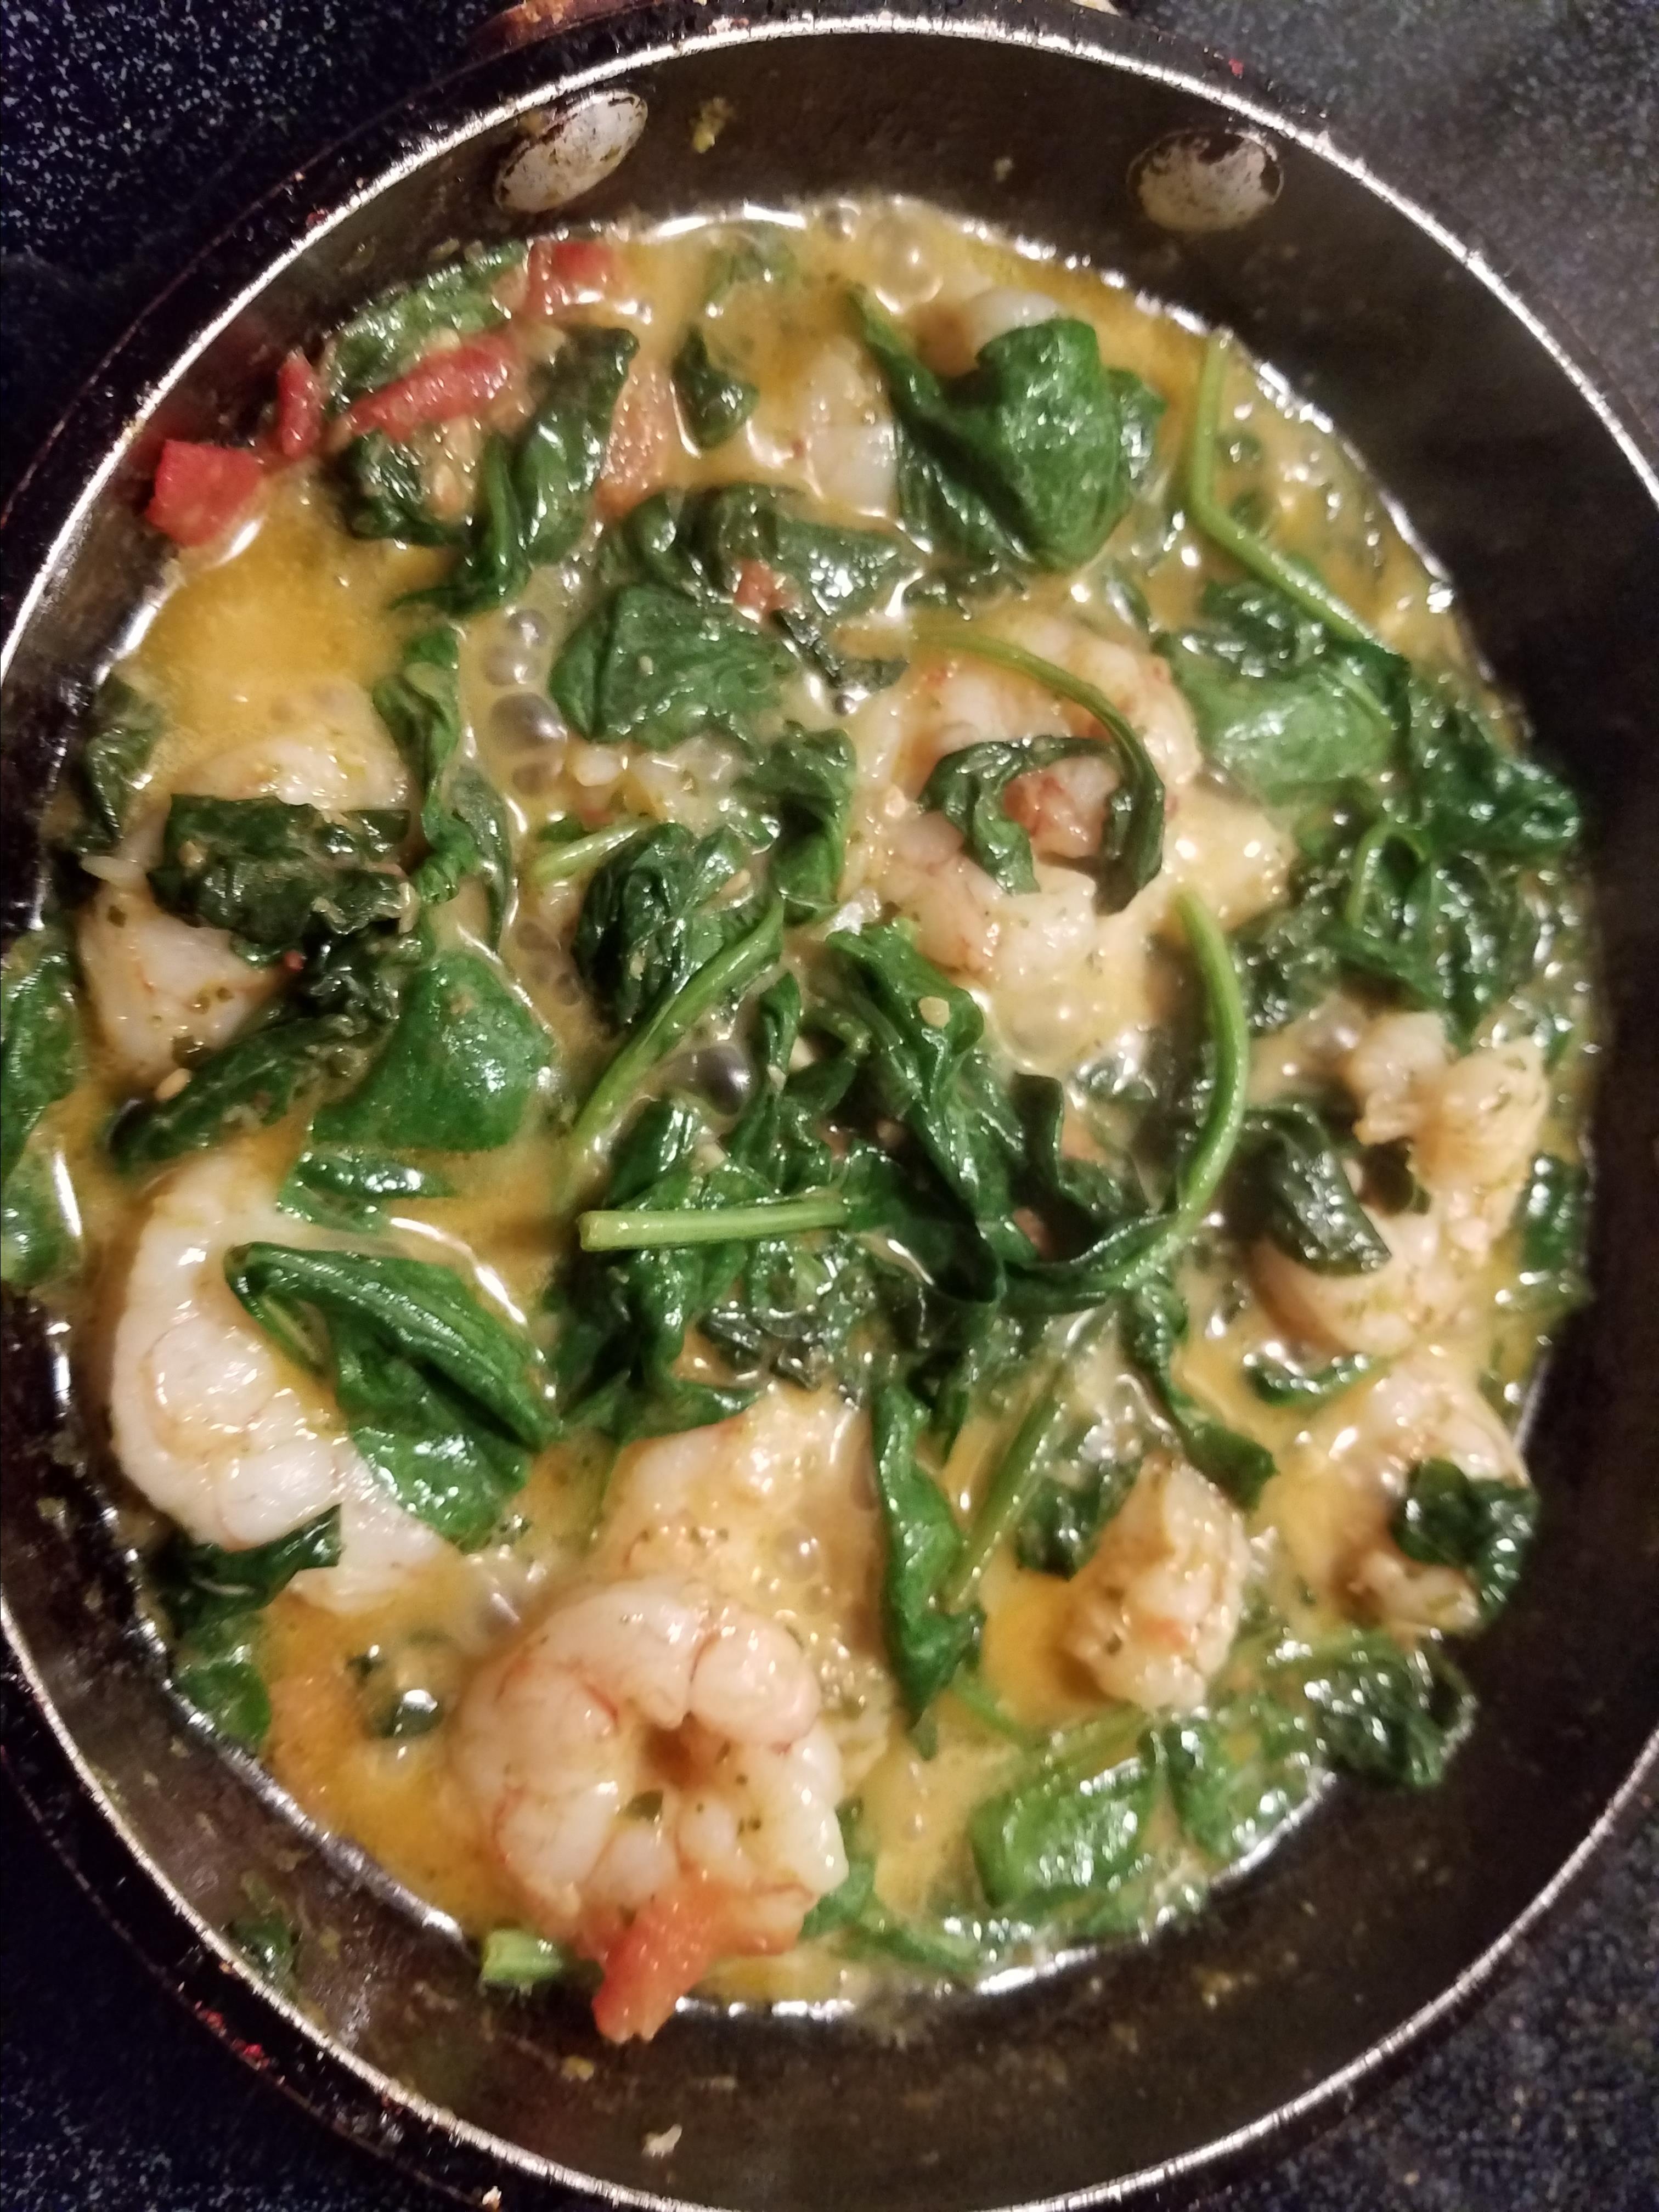 My Special Shrimp Scampi Florentine Recipe | Allrecipes